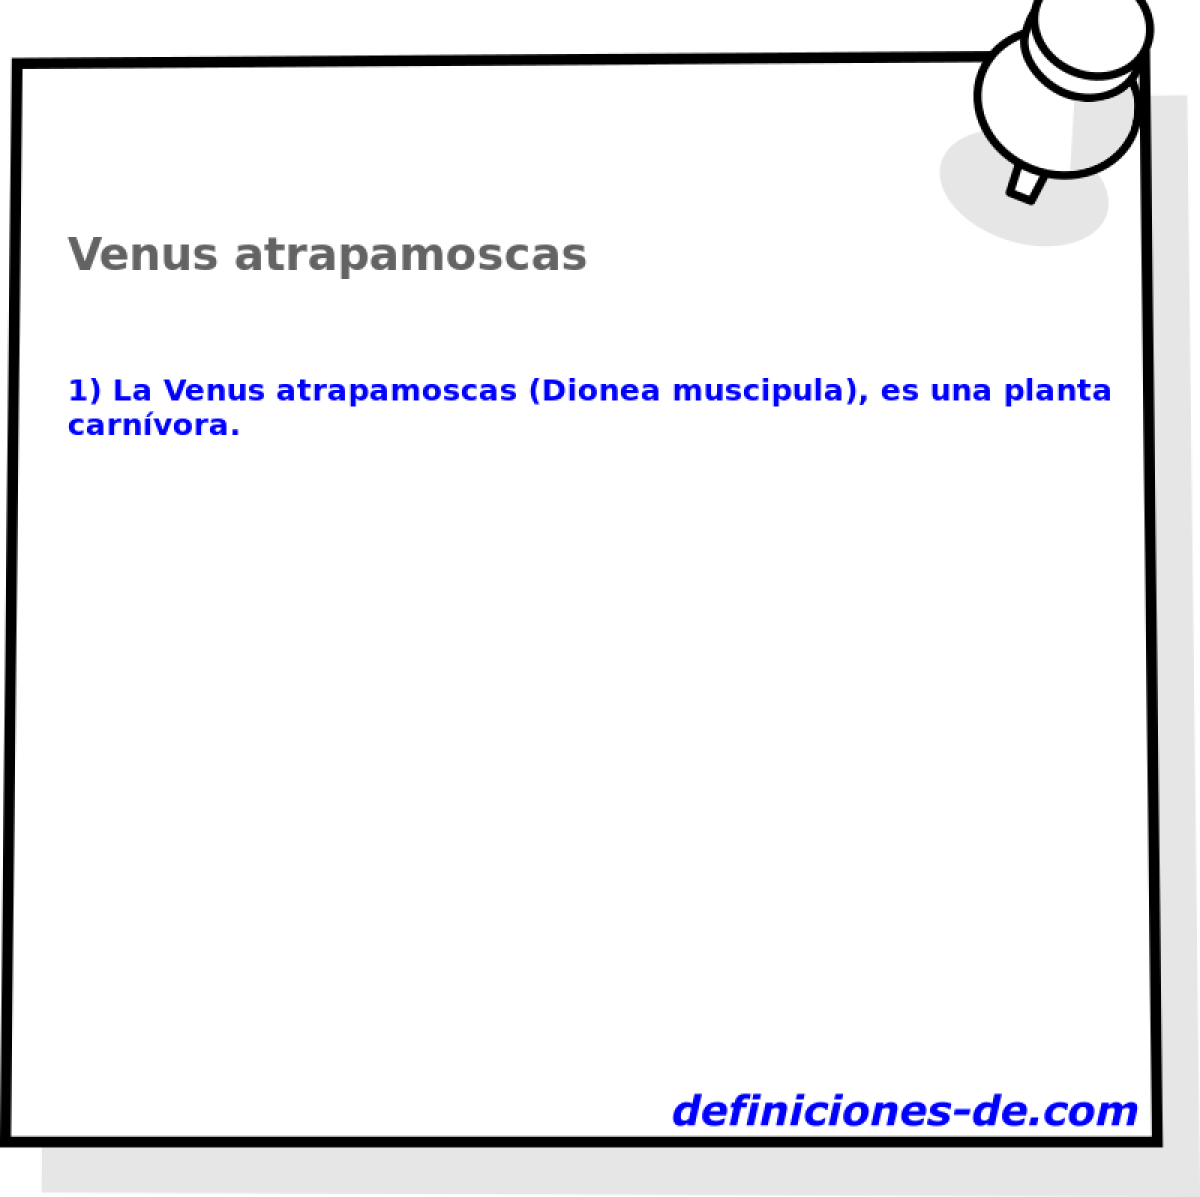 Venus atrapamoscas 